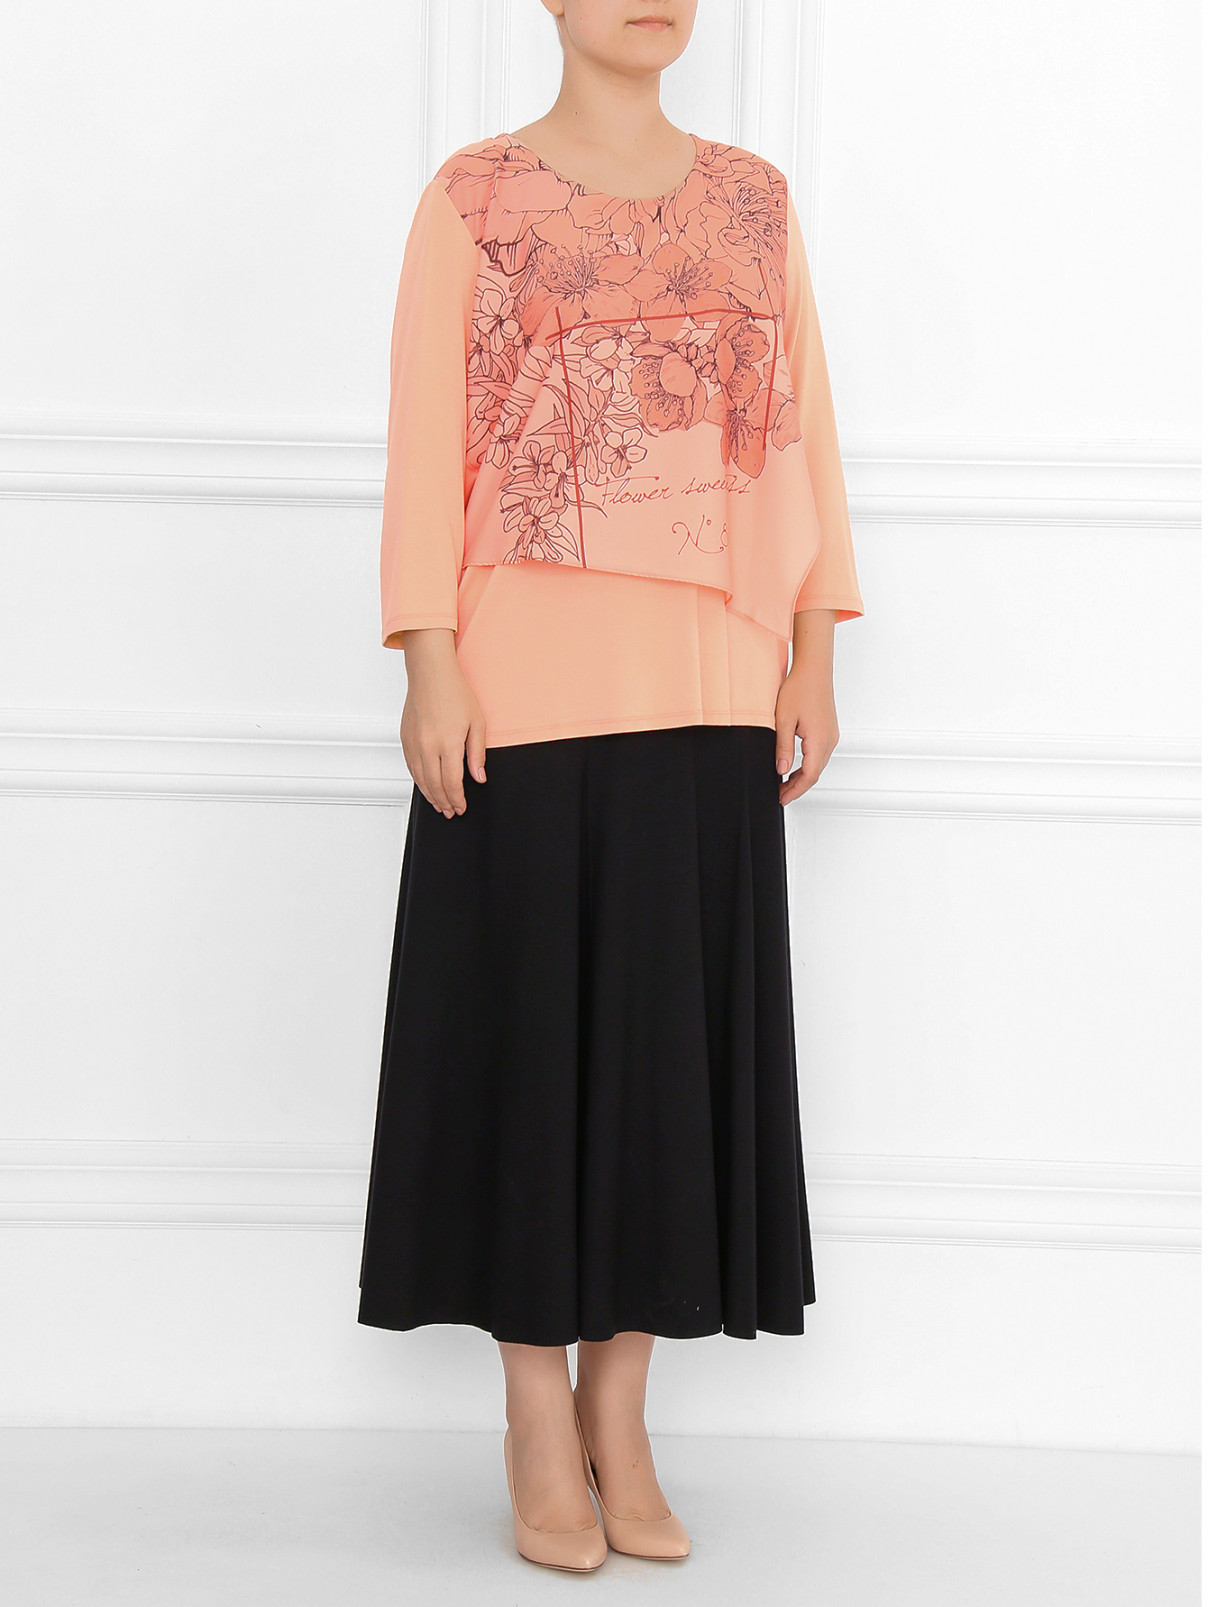 Блуза с цветочным узором Marina Sport  –  Модель Общий вид  – Цвет:  Розовый